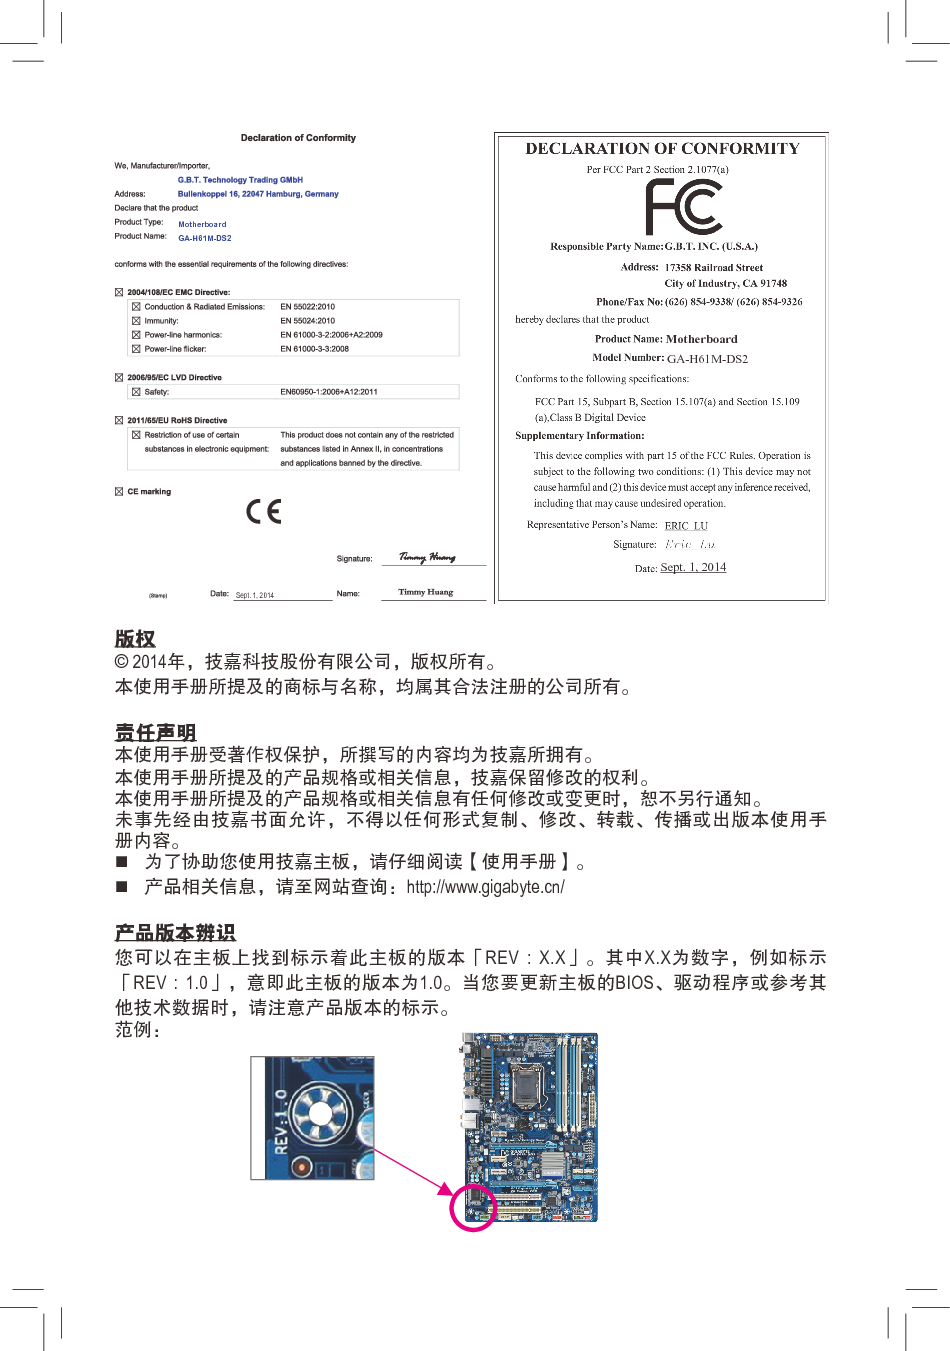 技嘉 Gigabyte GA-H61M-DS2 5001版 使用手册 第1页